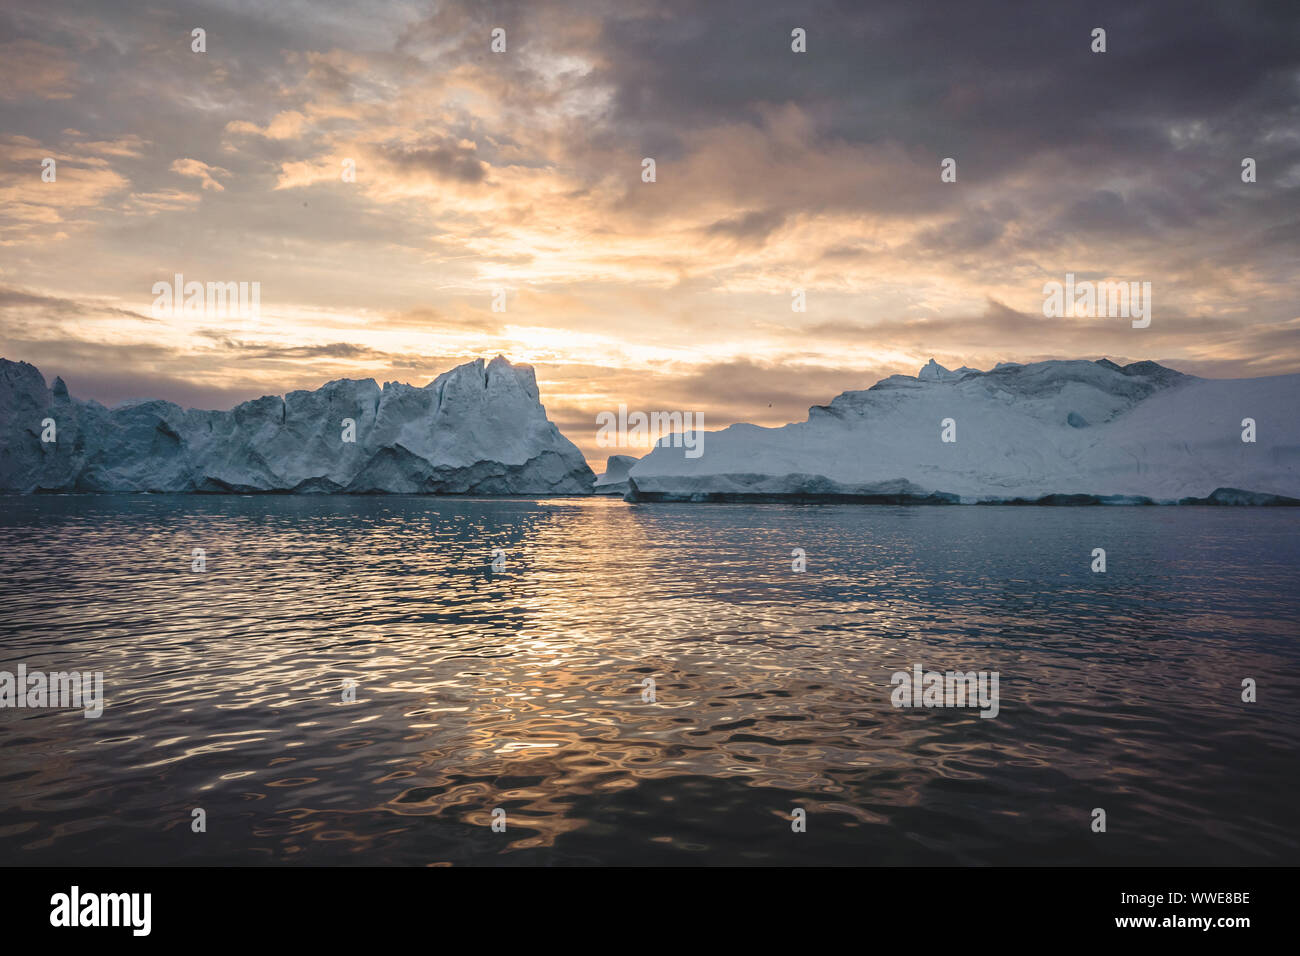 Naturaleza del paisaje ártico con icebergs en Groenlandia icefjord con sol de medianoche atardecer amanecer en el horizonte. Temprano en la mañana de verano durante alpenglow Foto de stock